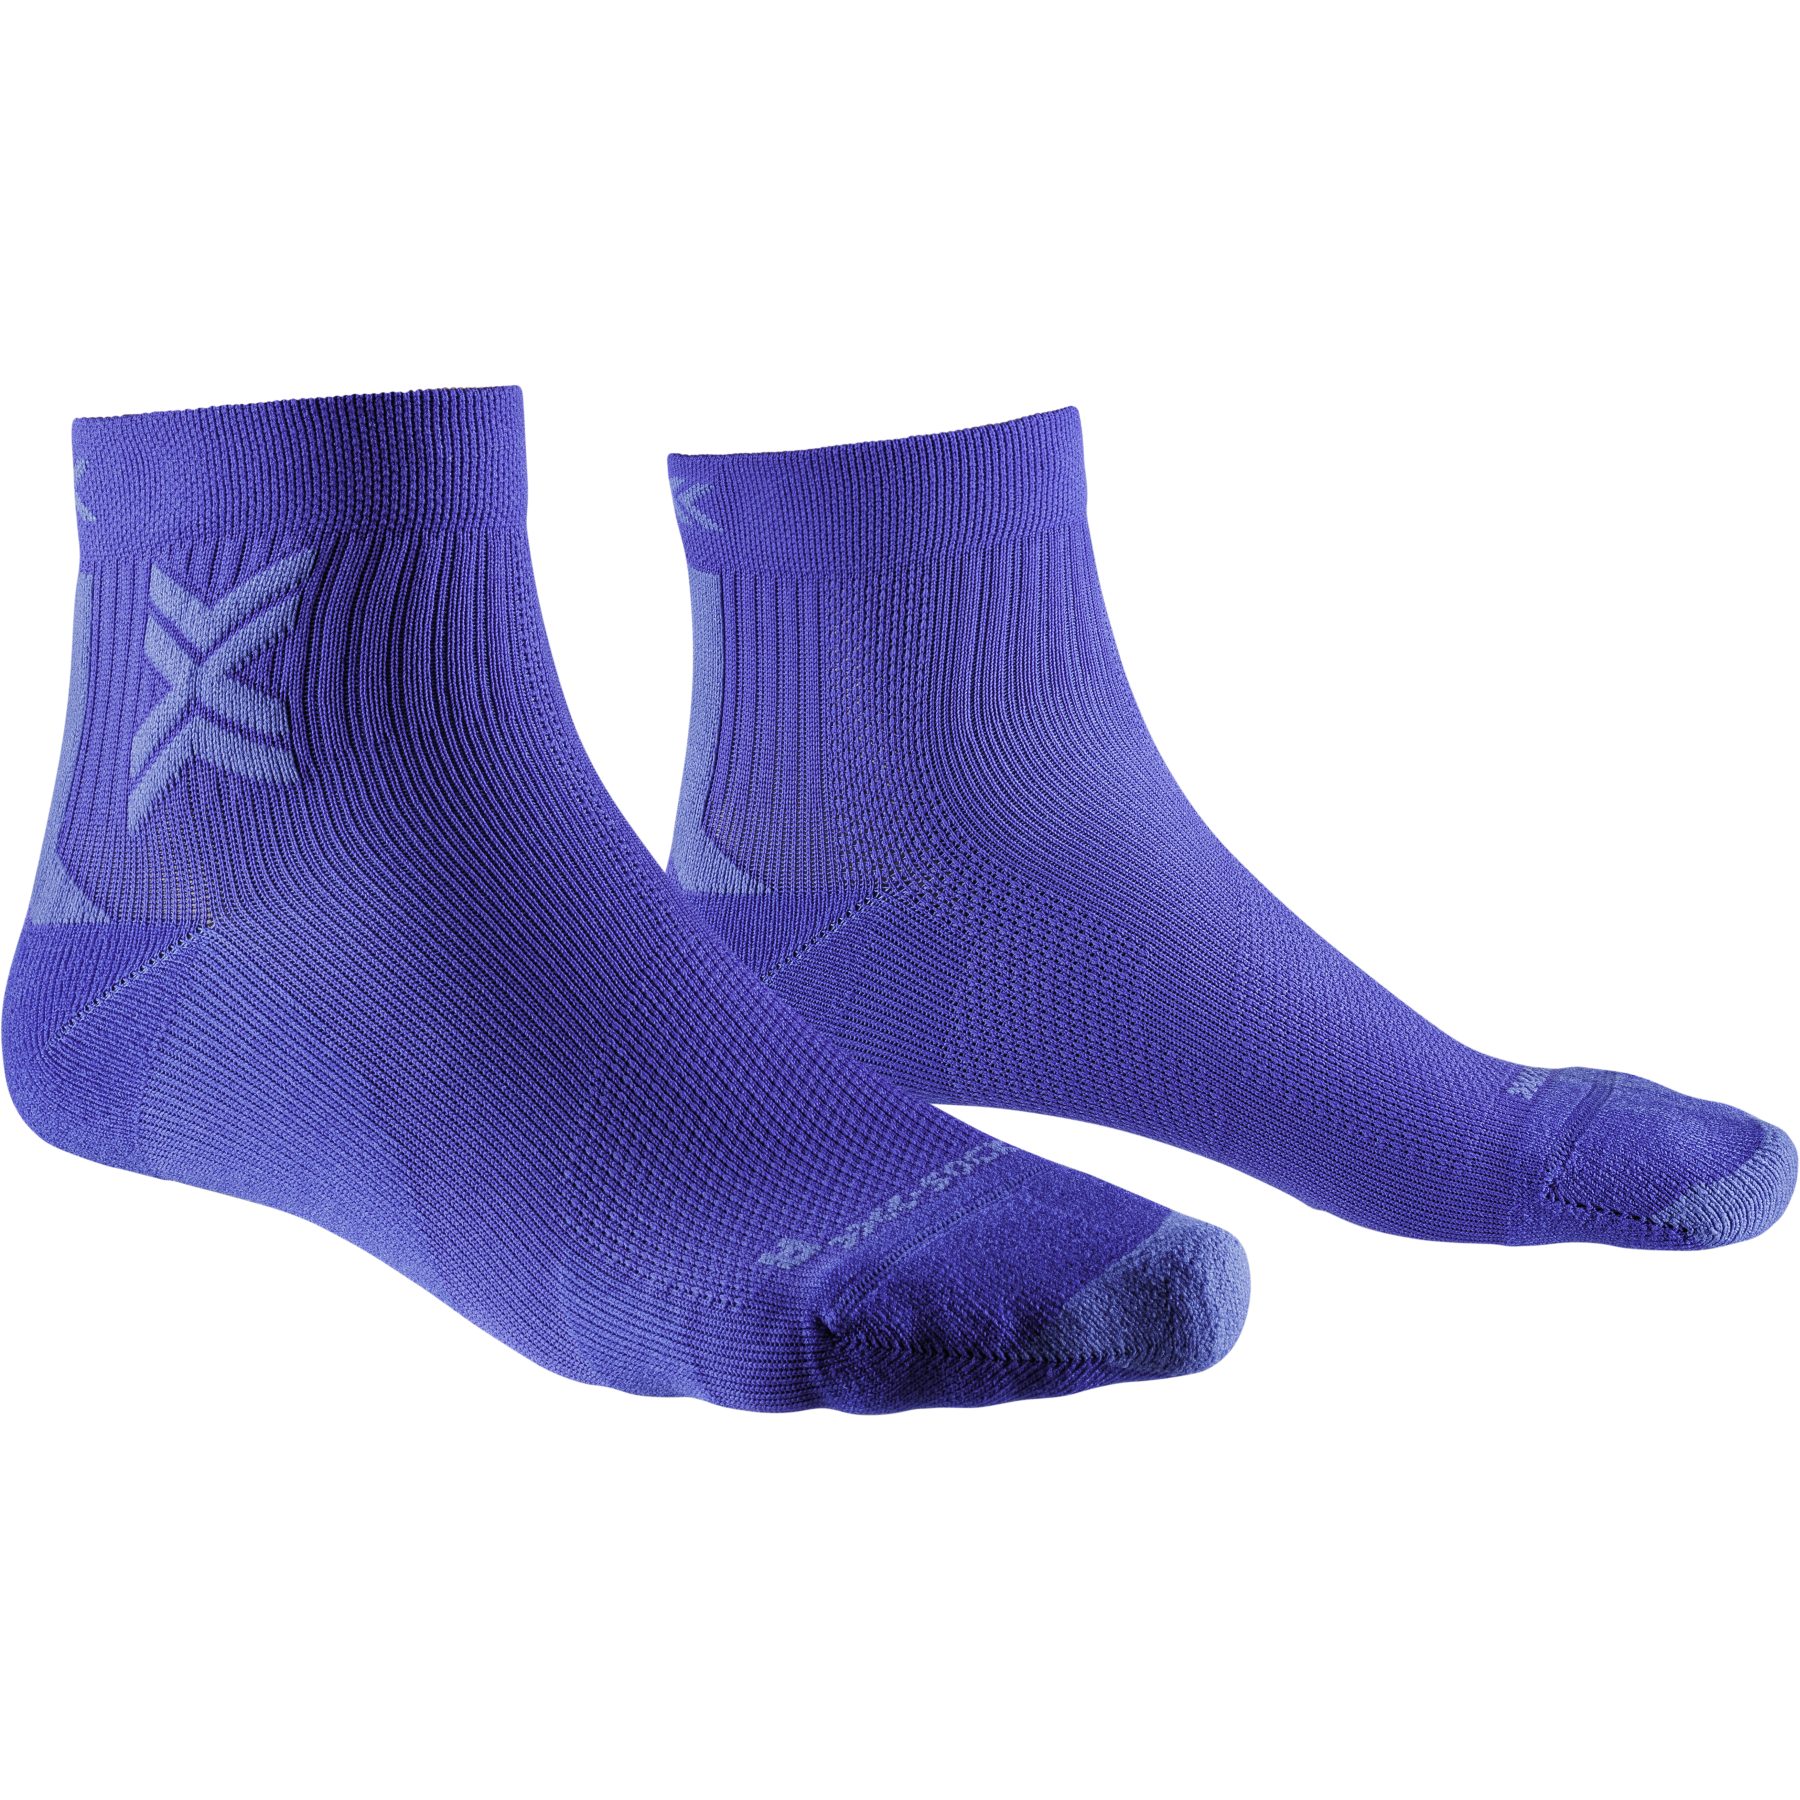 Produktbild von X-Socks Run Discover Ankle Laufsocken Herren - twyce blue/blue